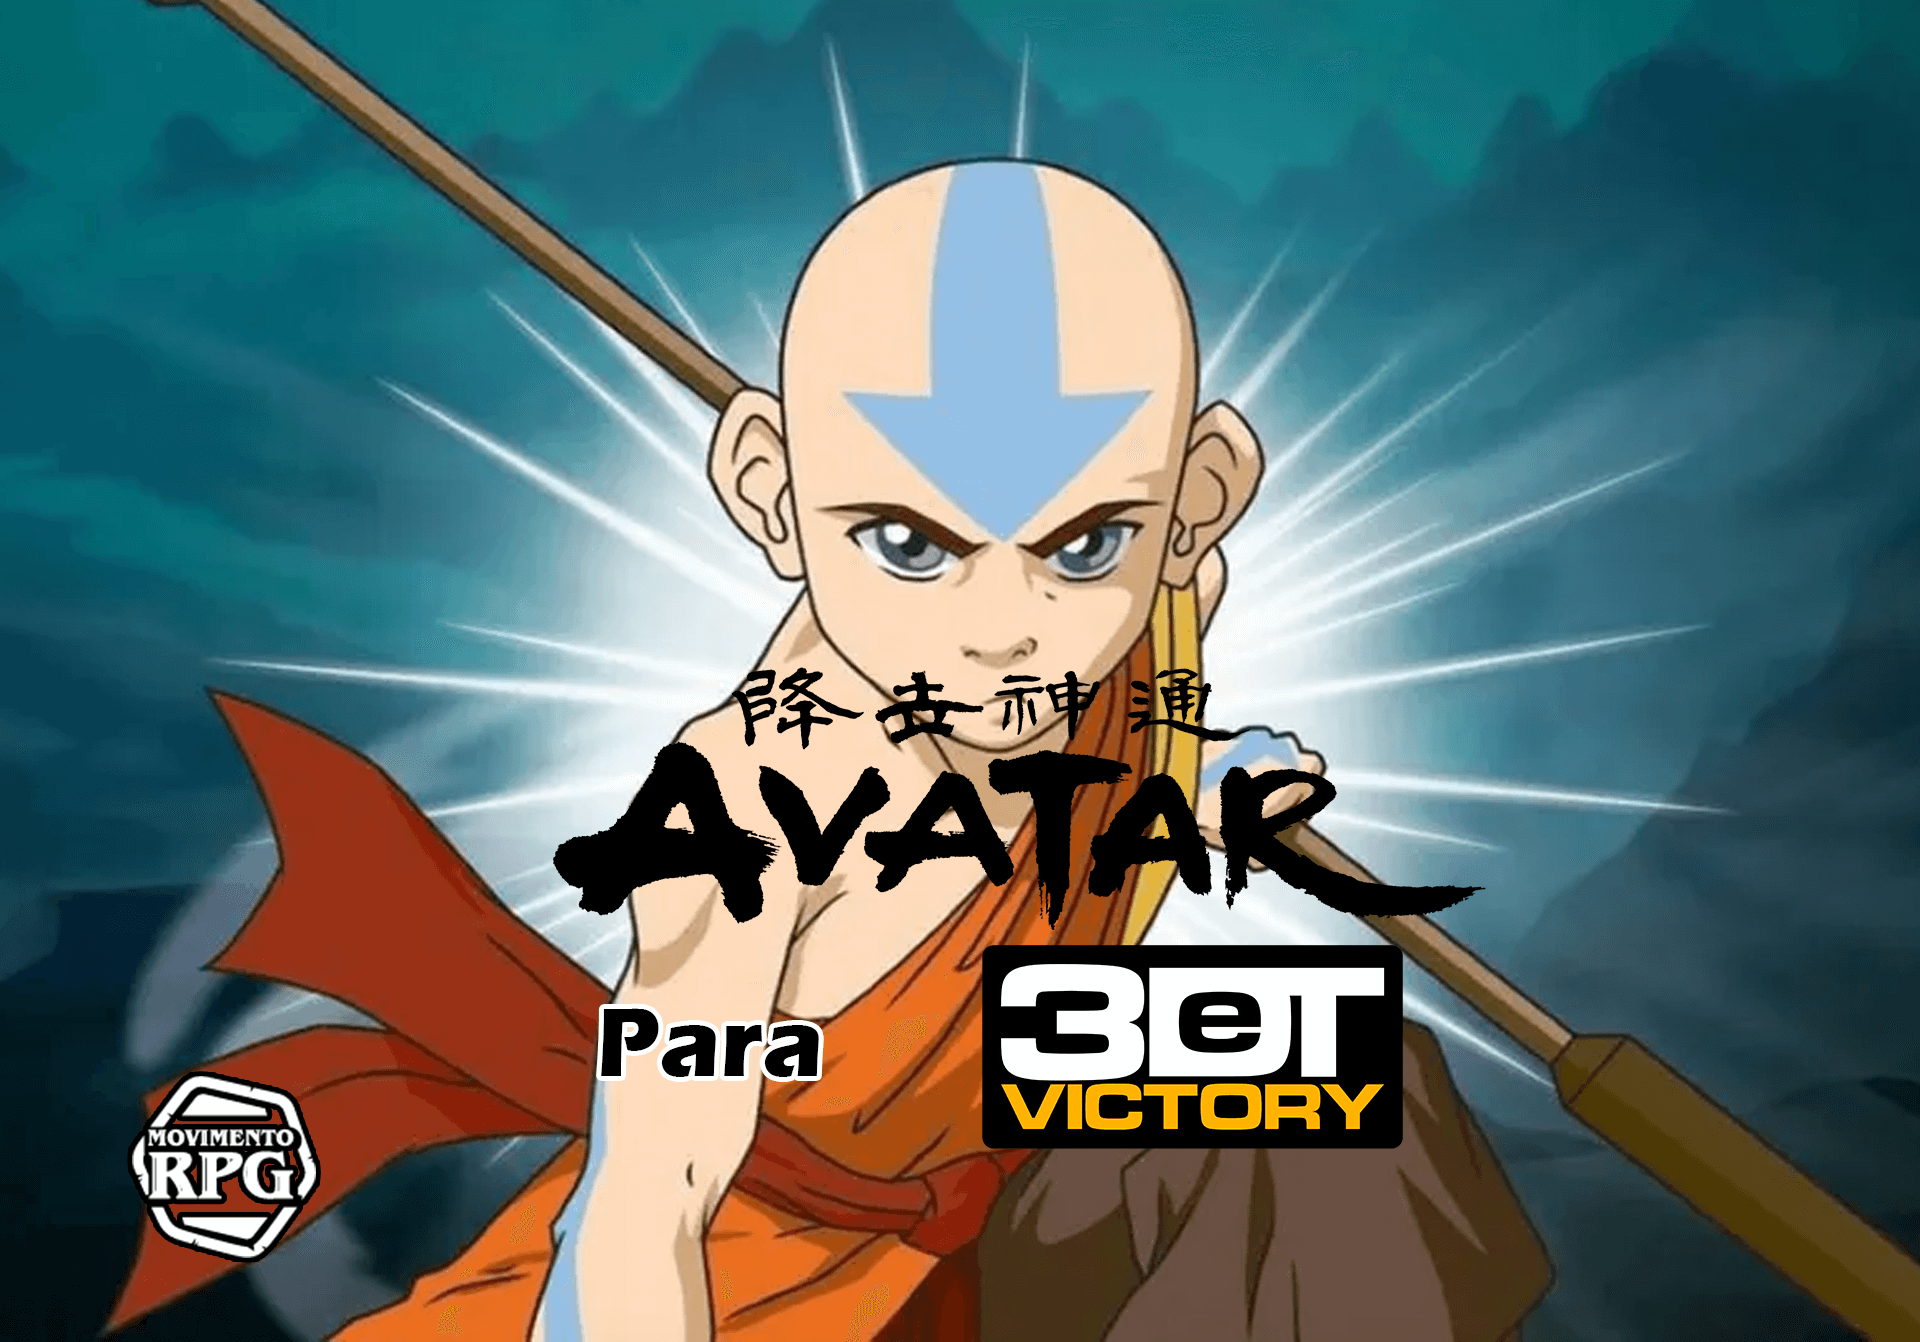 Avatar: A Lenda de Aang para 3DeT Victory